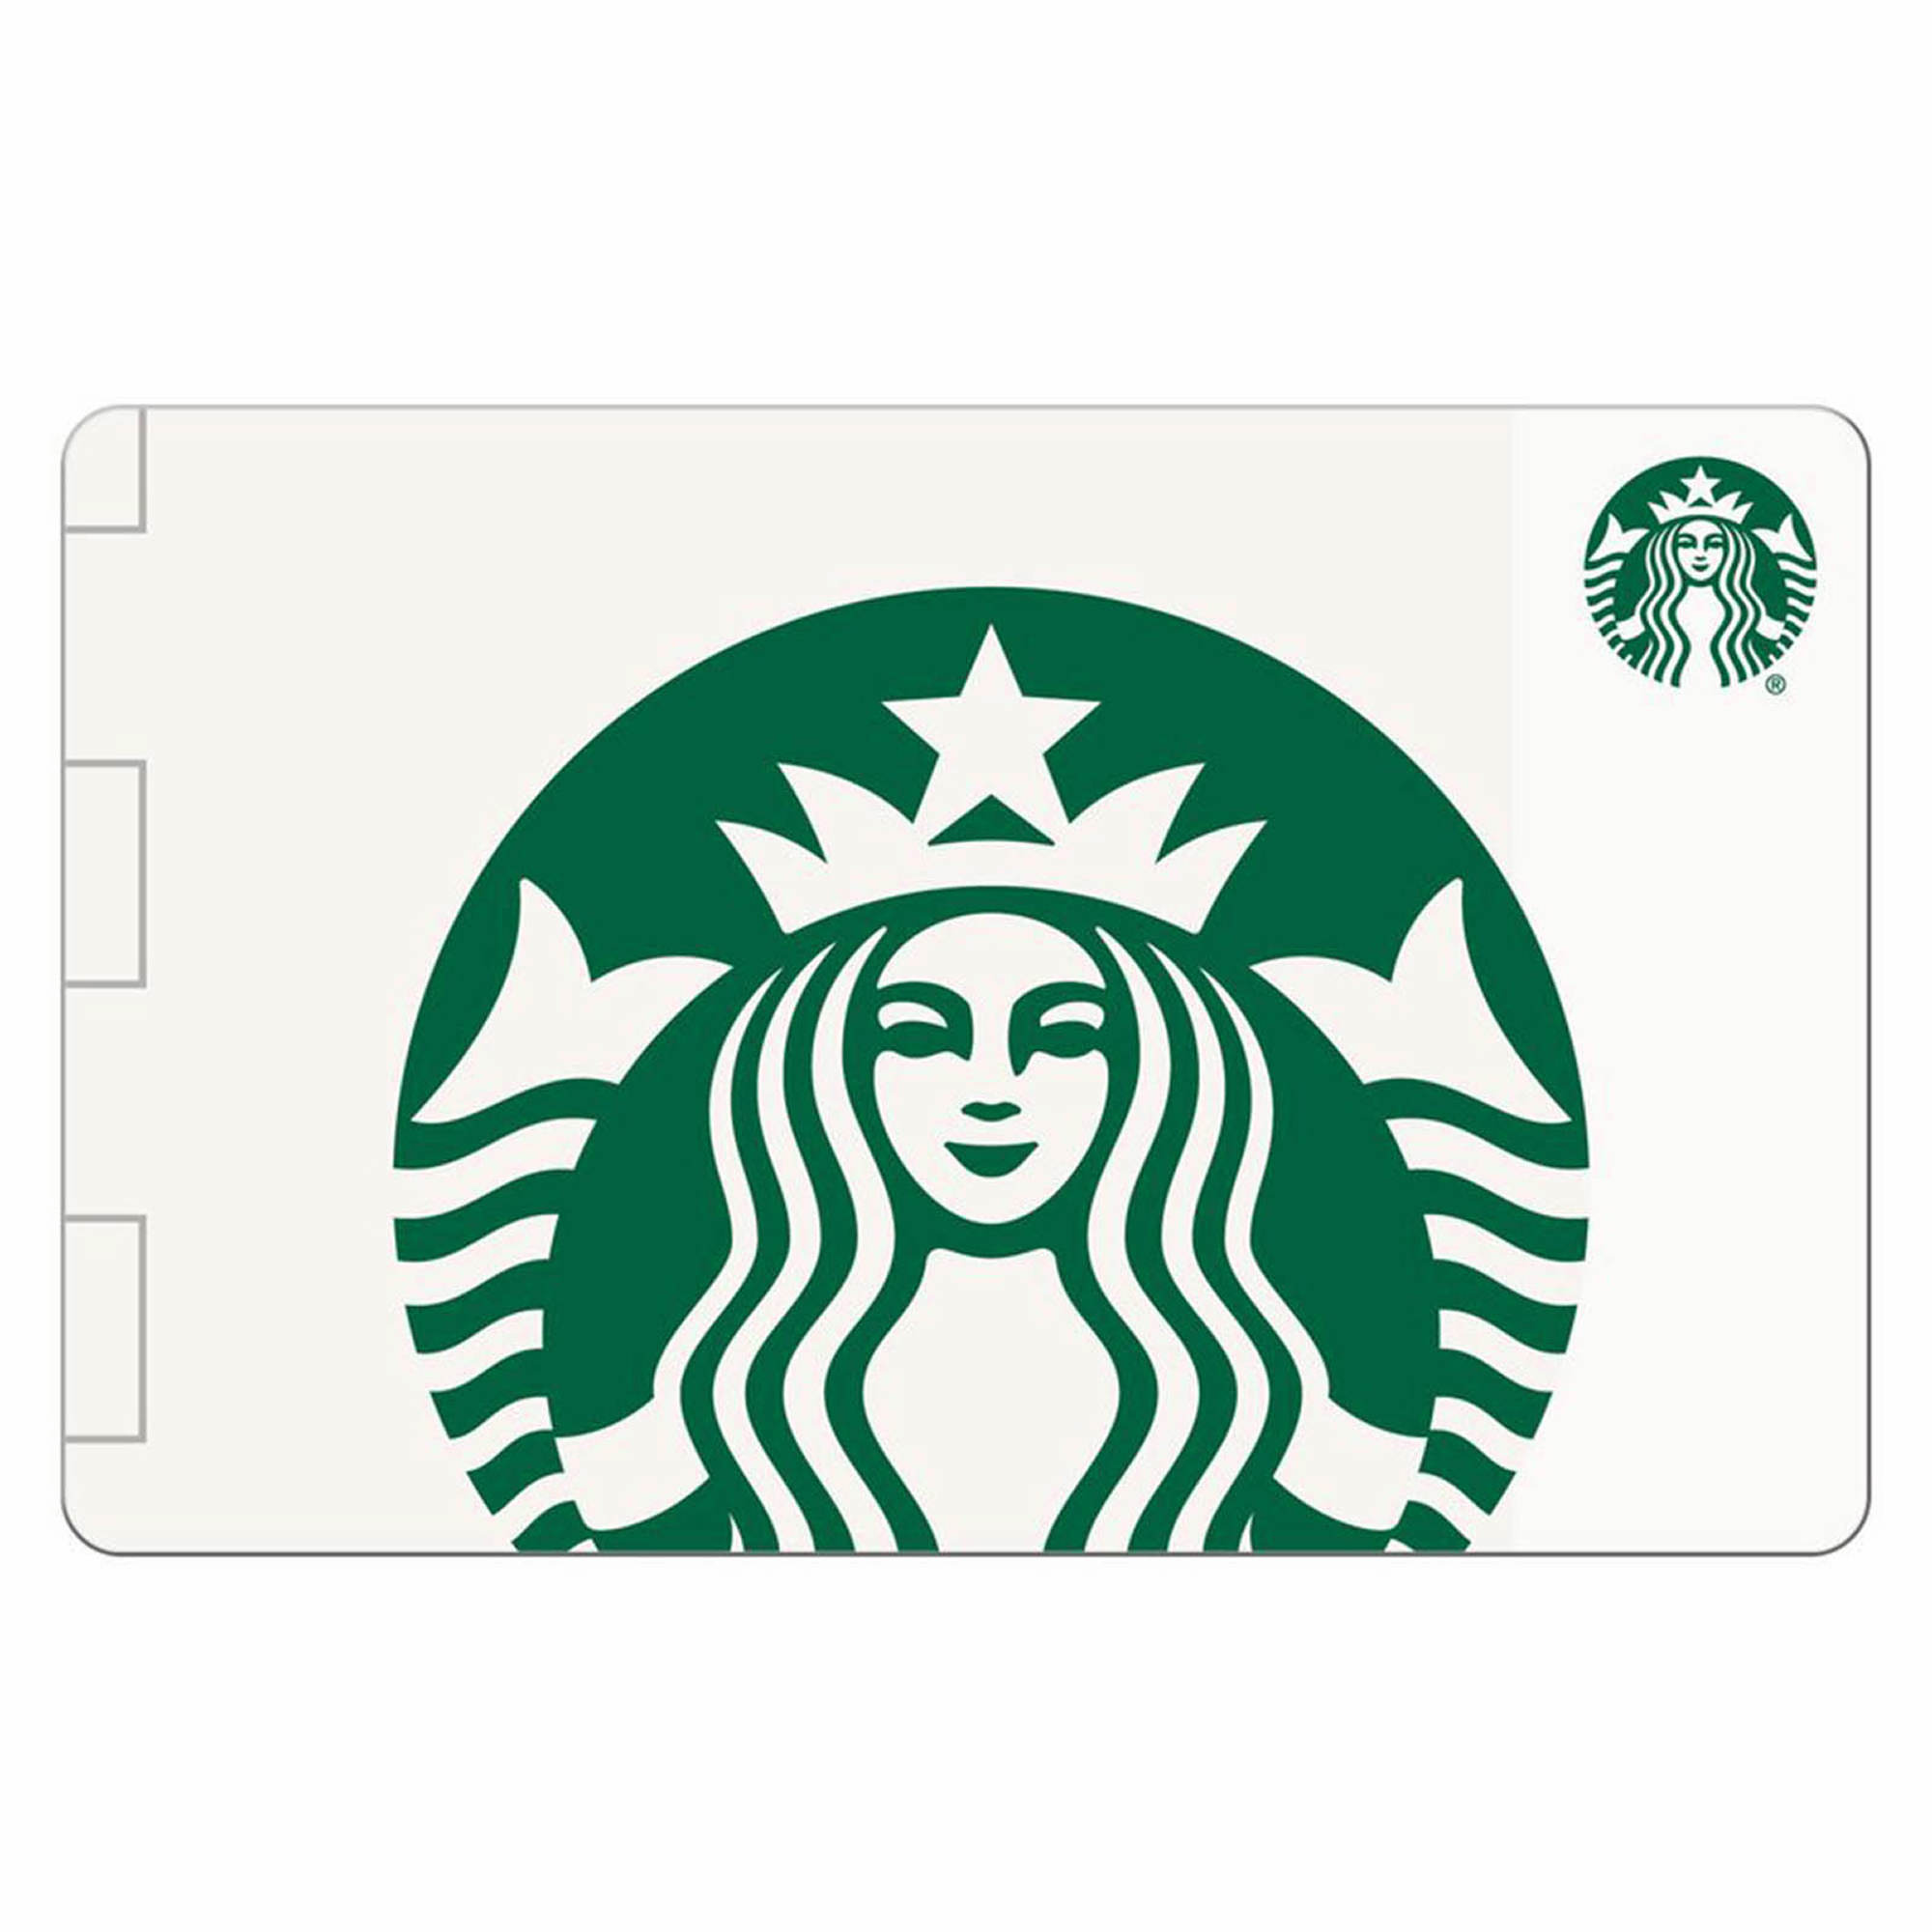 3Pack 10 Starbucks Gift Card (30 total value) from BJs